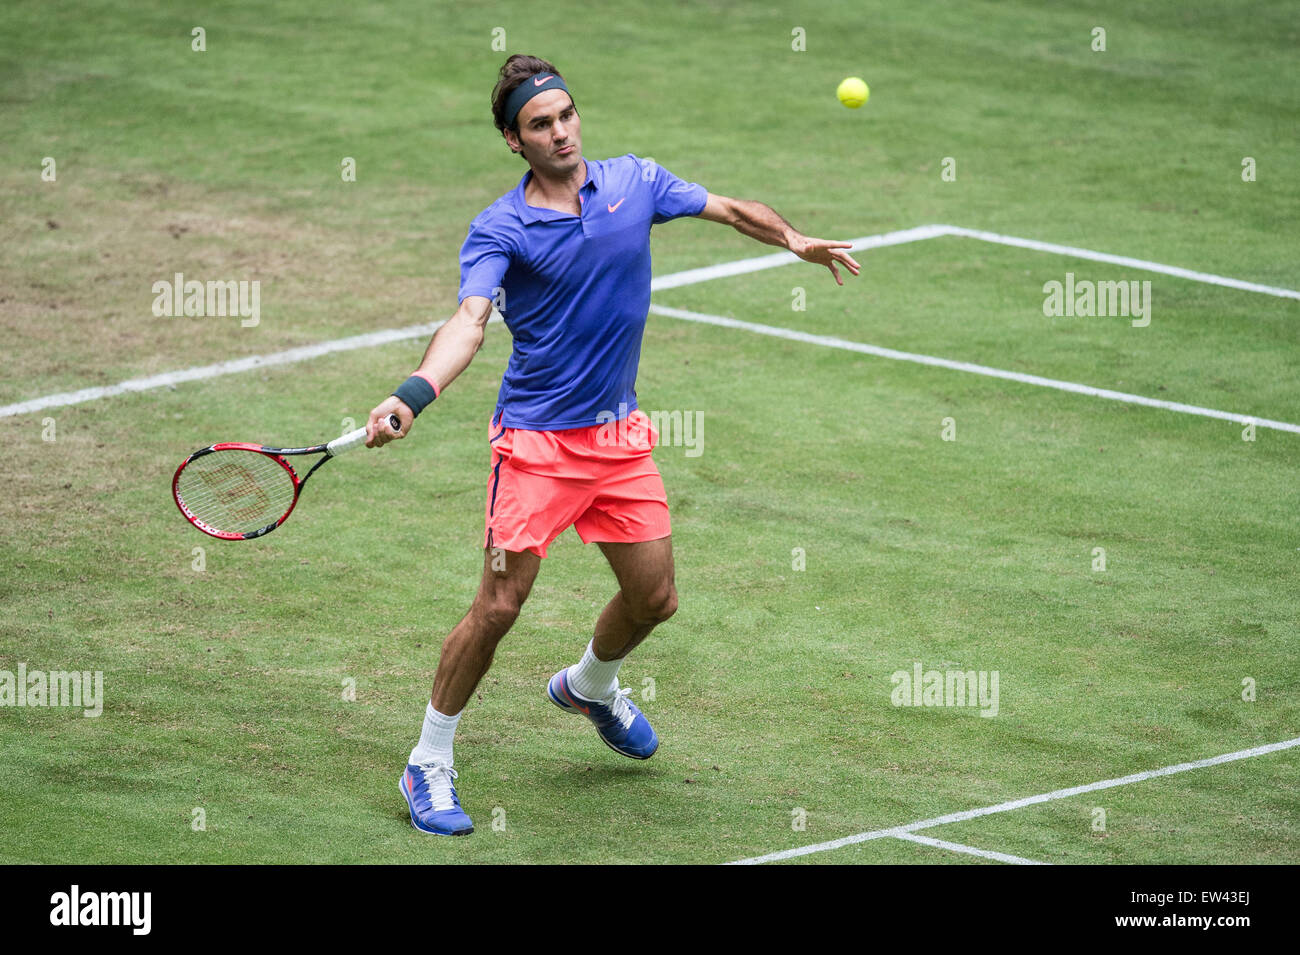 Halle, Germania. 17 Giugno, 2015. Roger Federer in azione durante il round di 16 match contro Gulbis della Lettonia alla ATP torneo di tennis a Halle, Germania, 17 giugno 2015. Foto: MAJA HITIJ/dpa/Alamy Live News Foto Stock